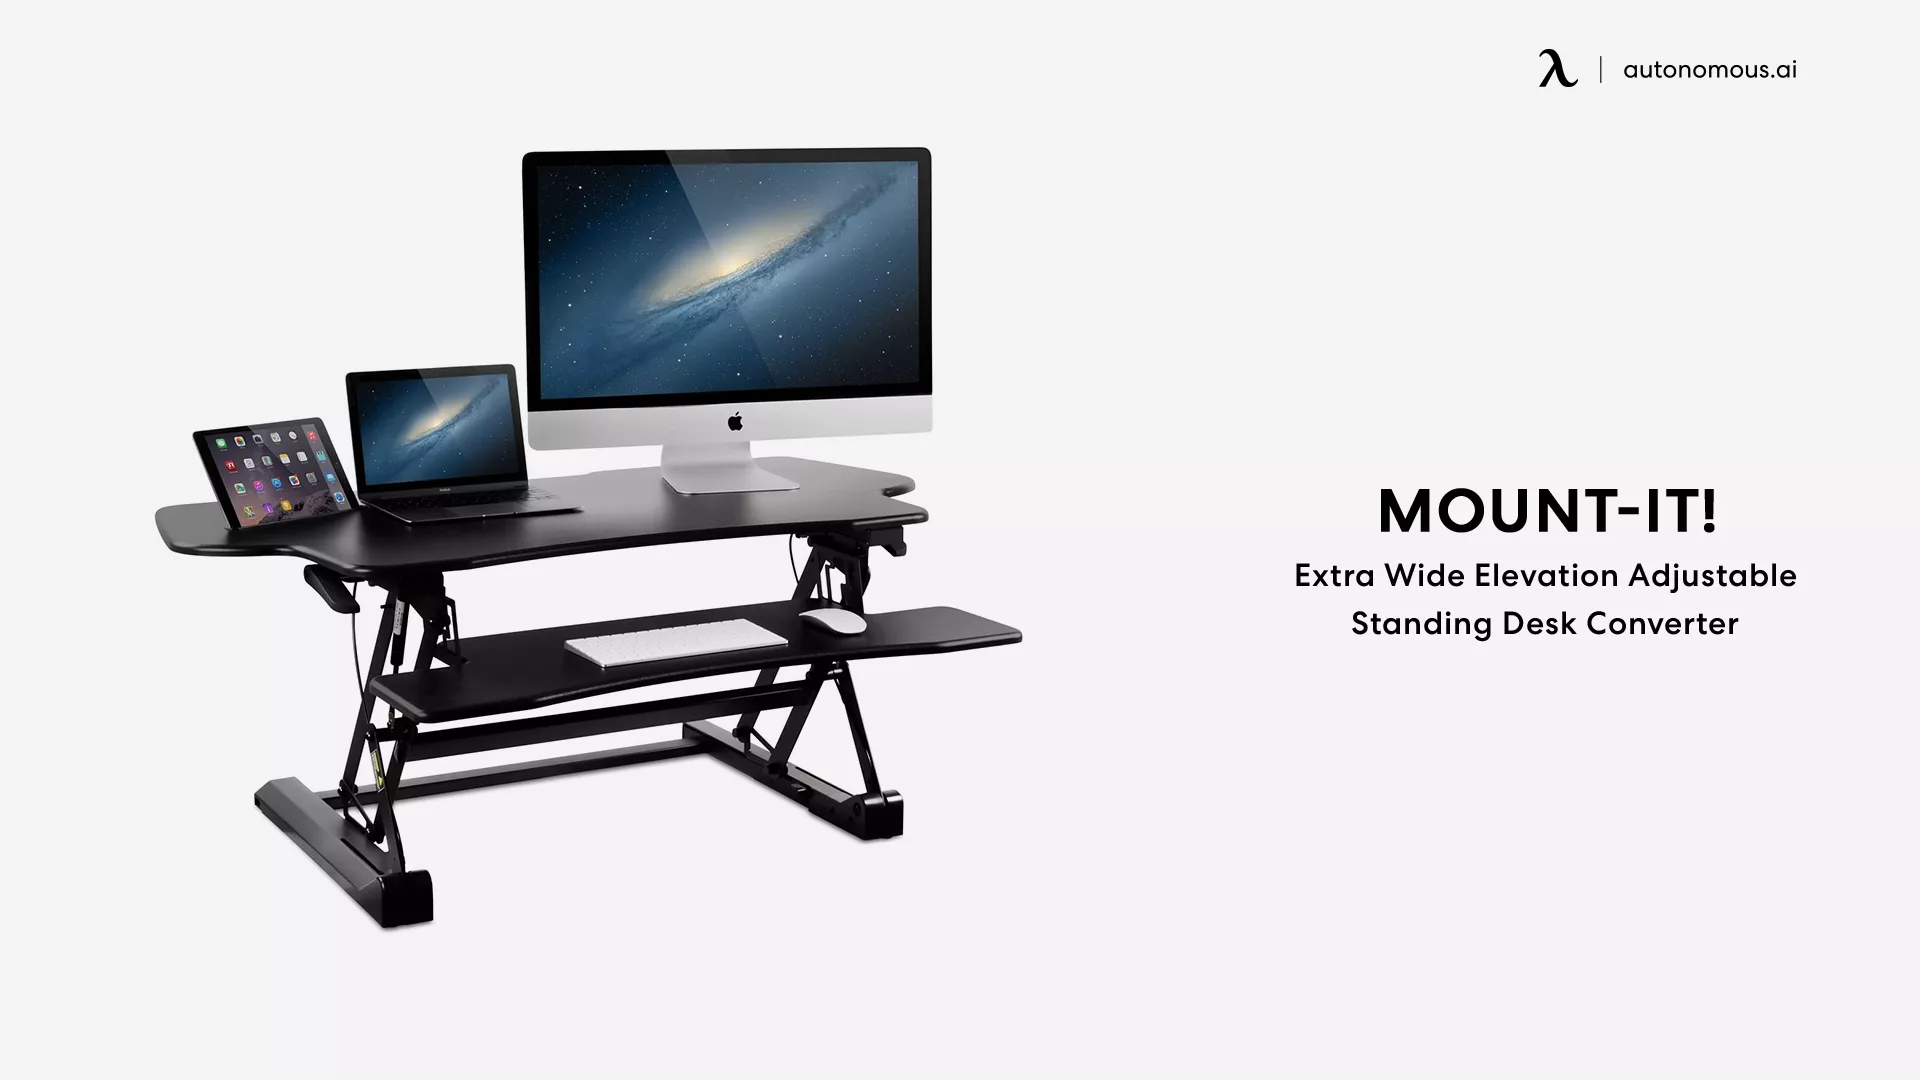 Mount-It! Extra Wide Elevation Adjustable Standing Desk Converter